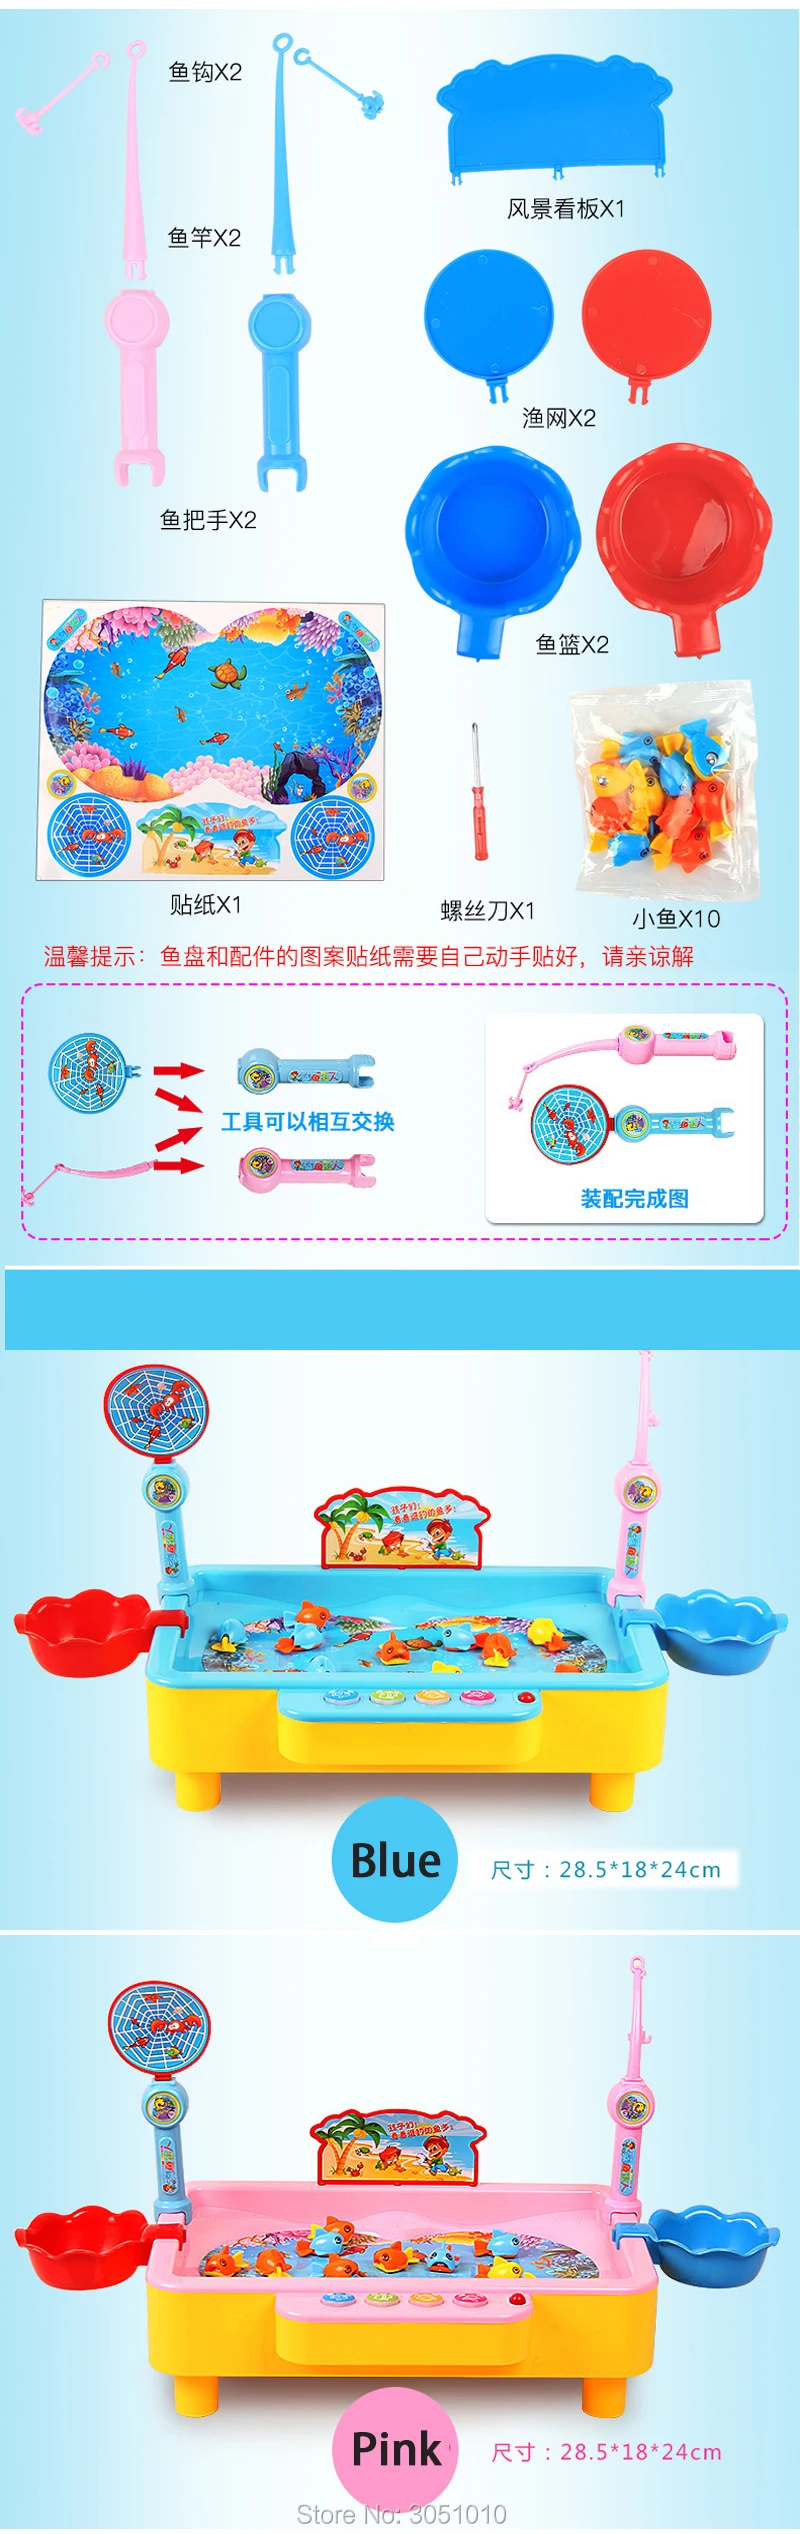 Новая усовершенствованная Тип детские игрушки двойной рыбы бассейн Электрический вращающийся Магнитная игра рыбалка с музыкой и игрушка в подарок игры открытый